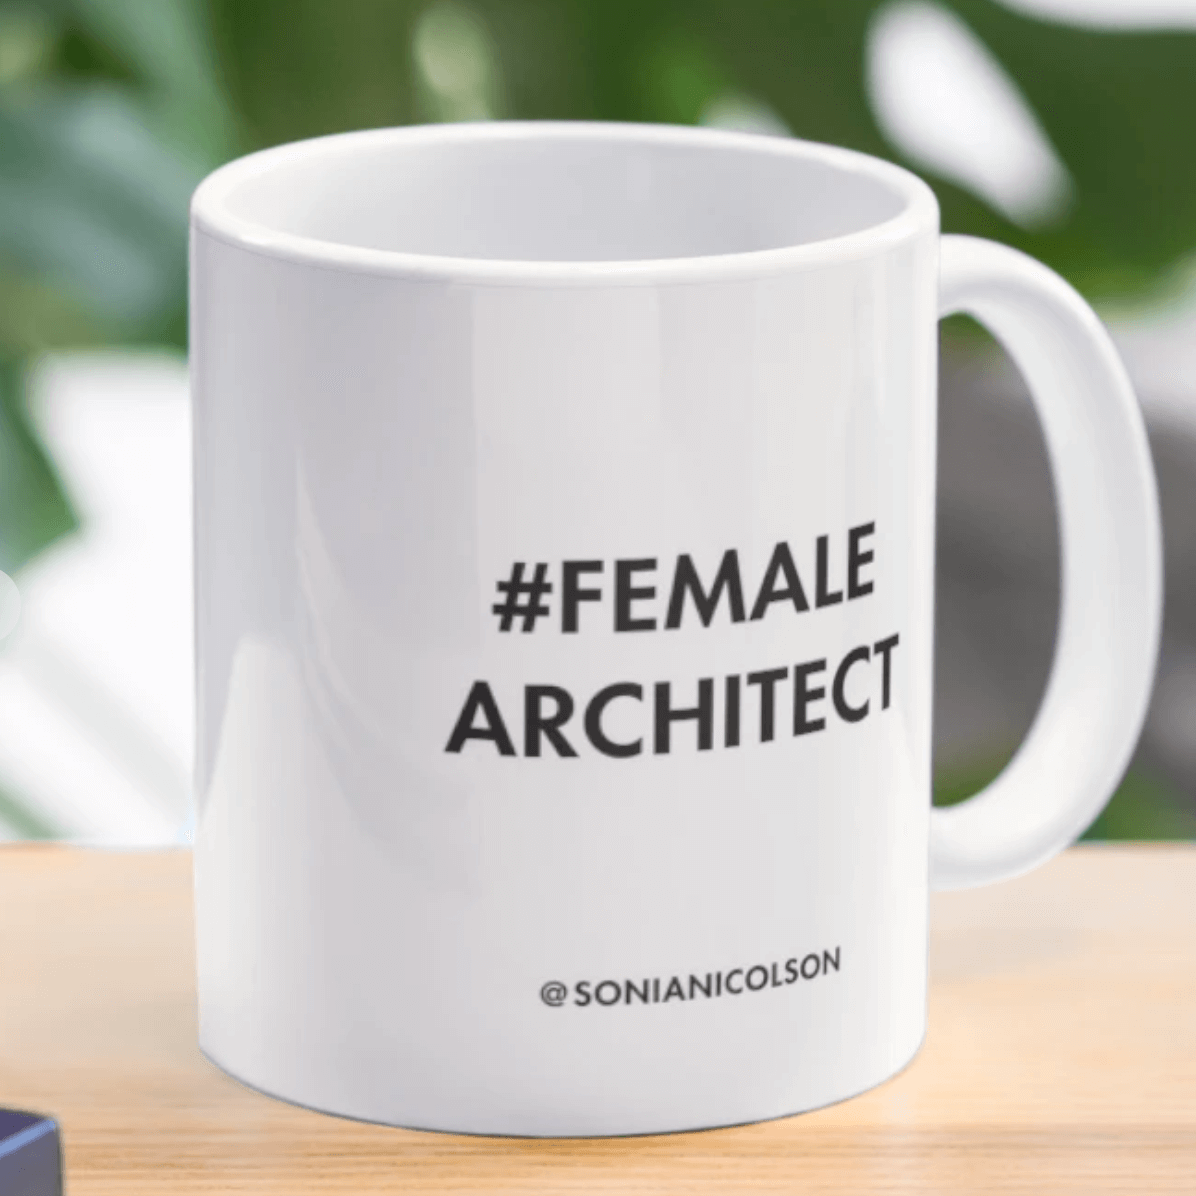 Female Architect mug